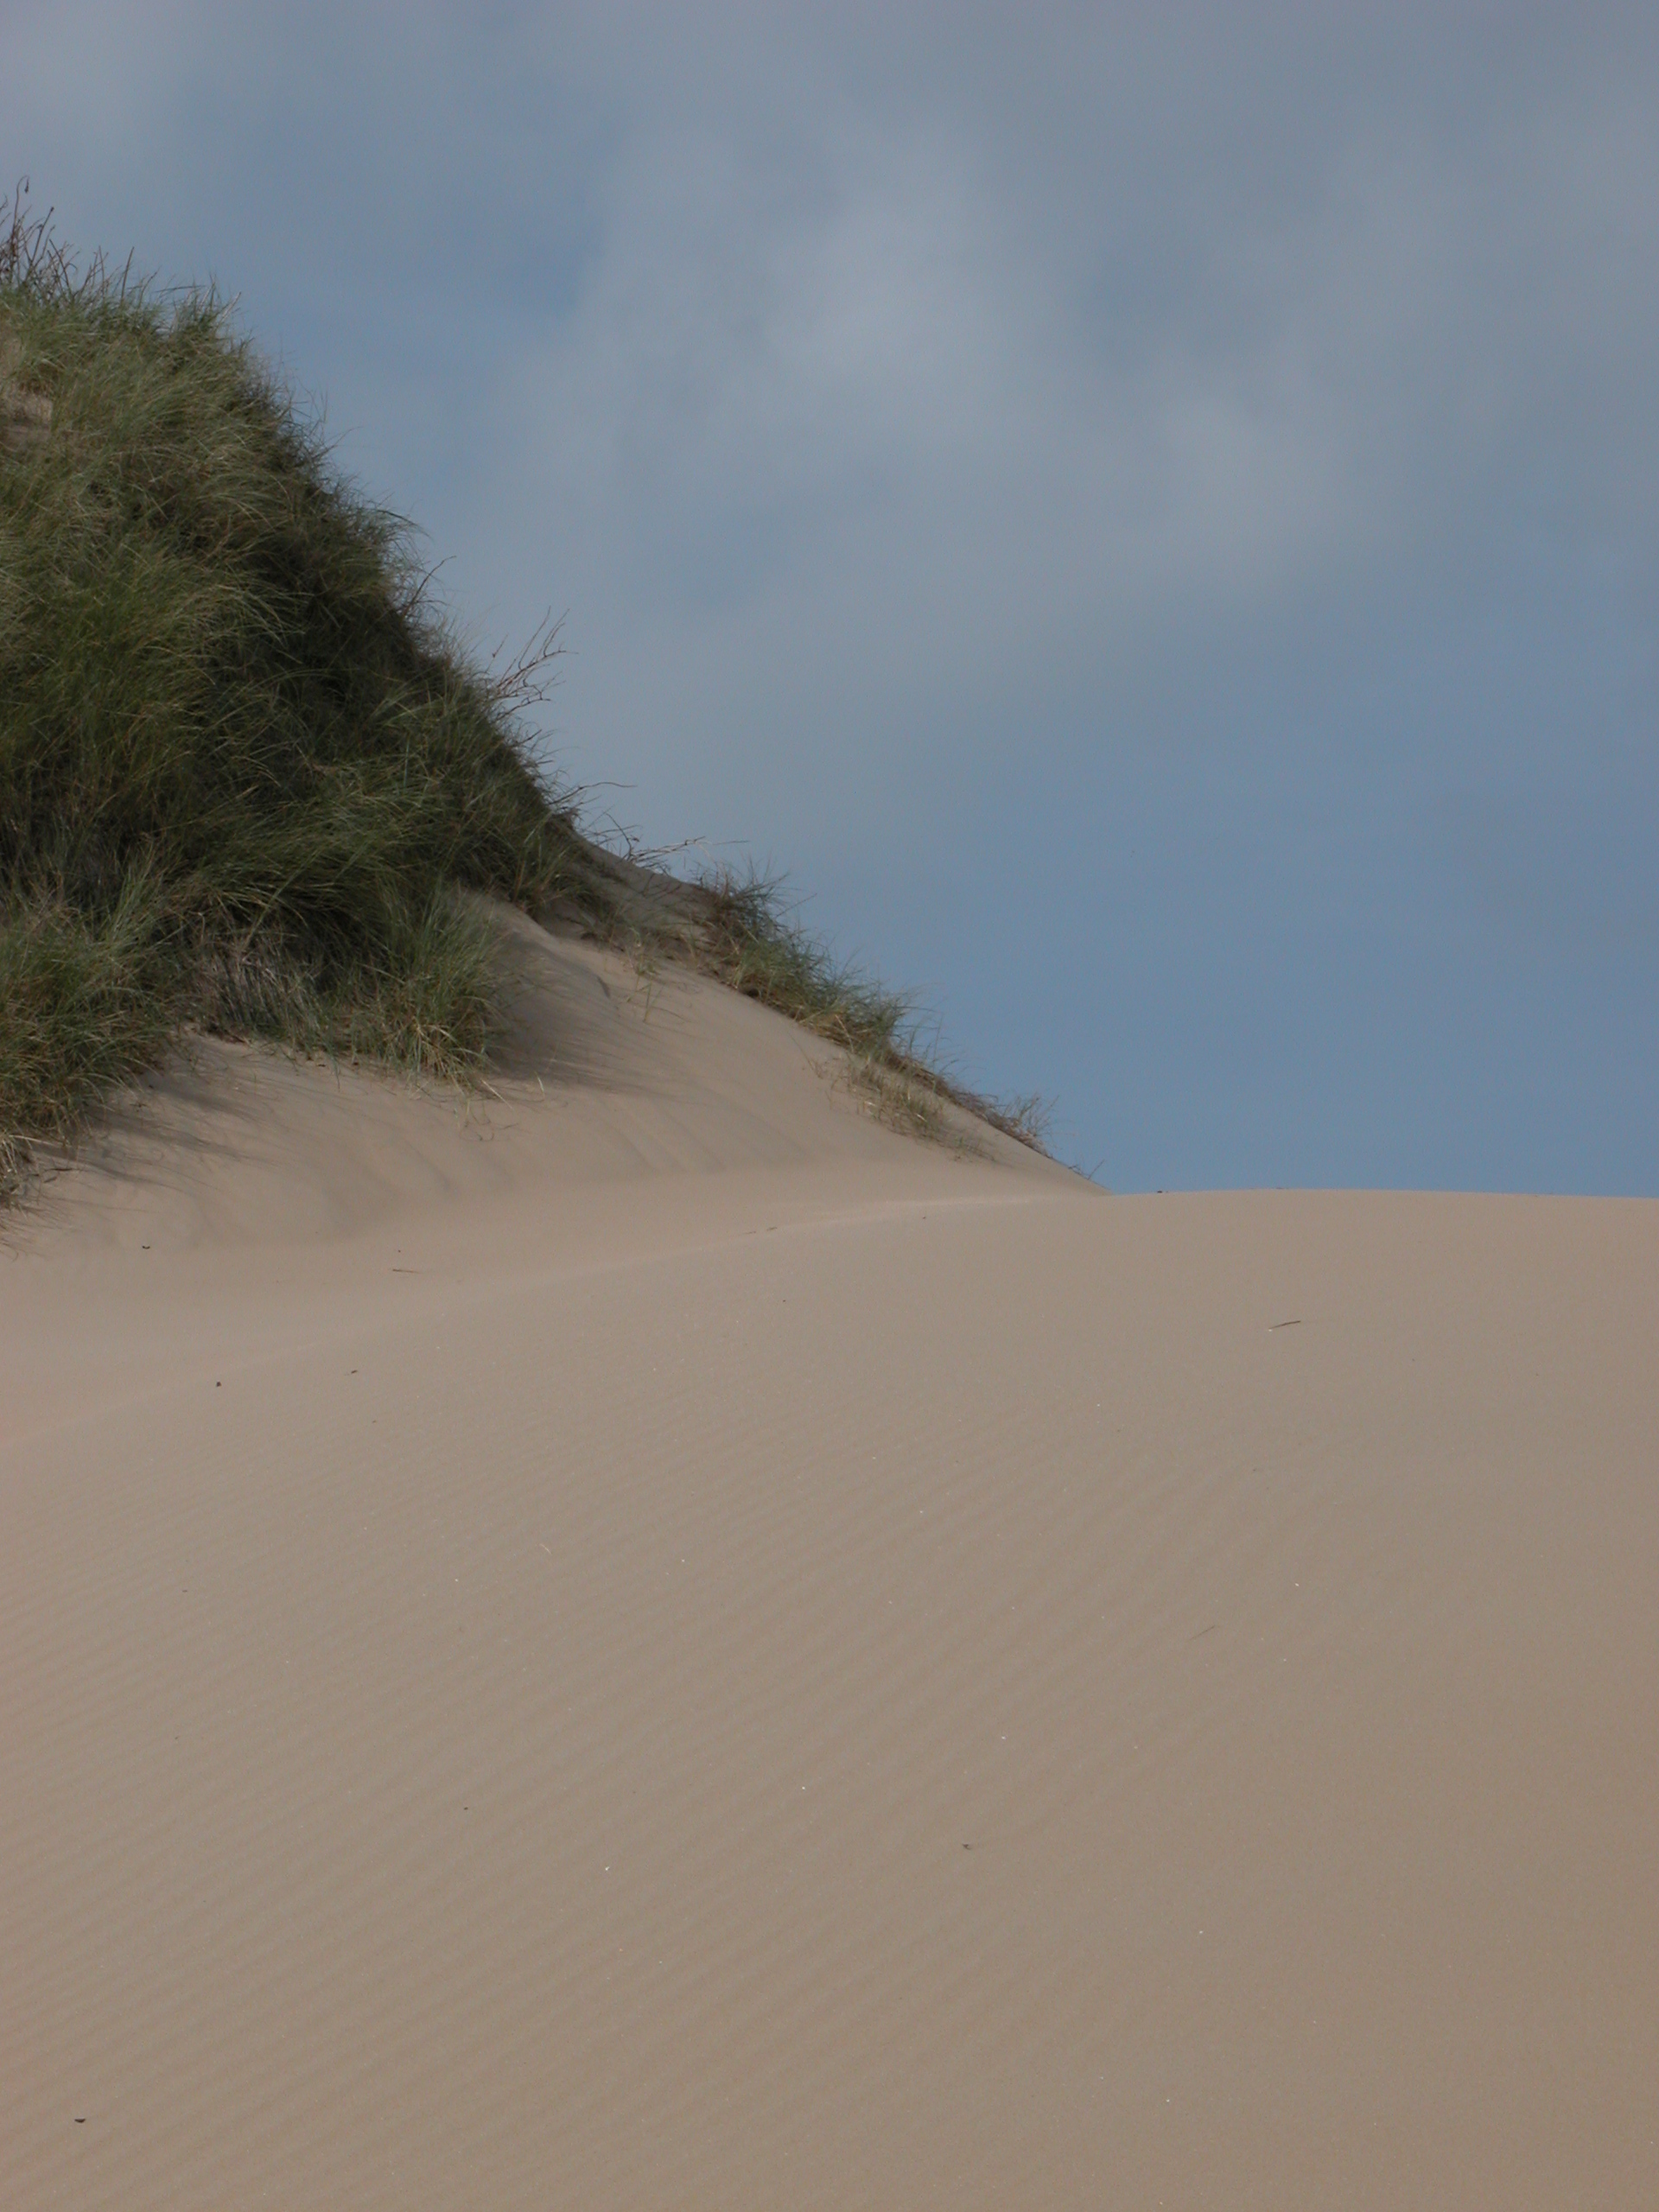 helm grass beach sand